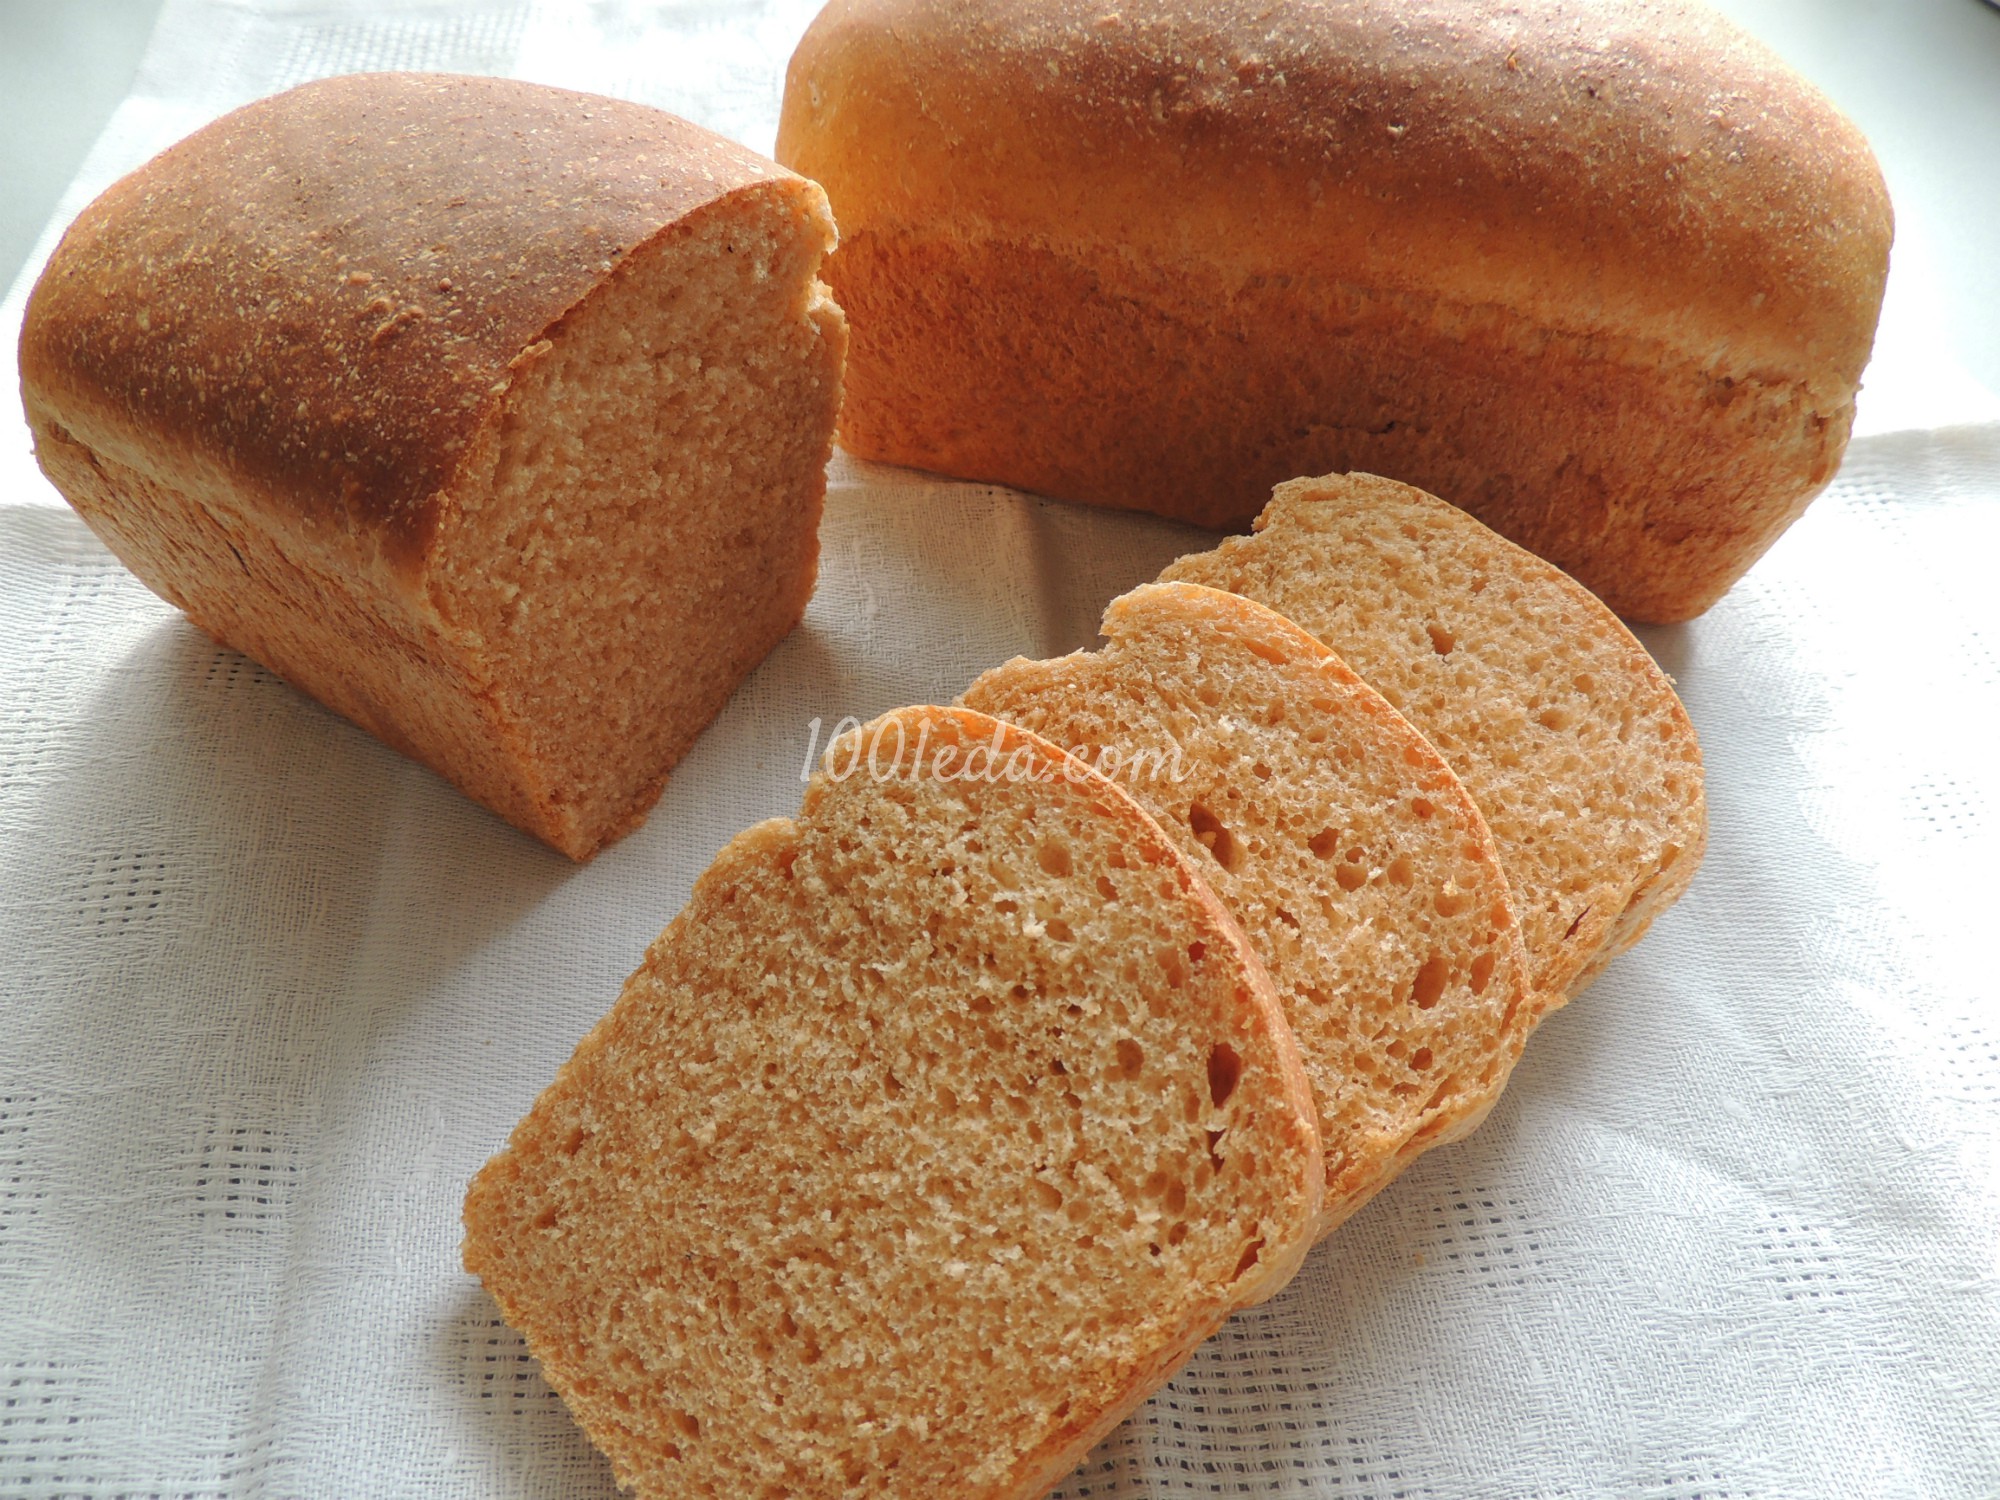  Хлеб с томатом: рецепт с пошаговым фото